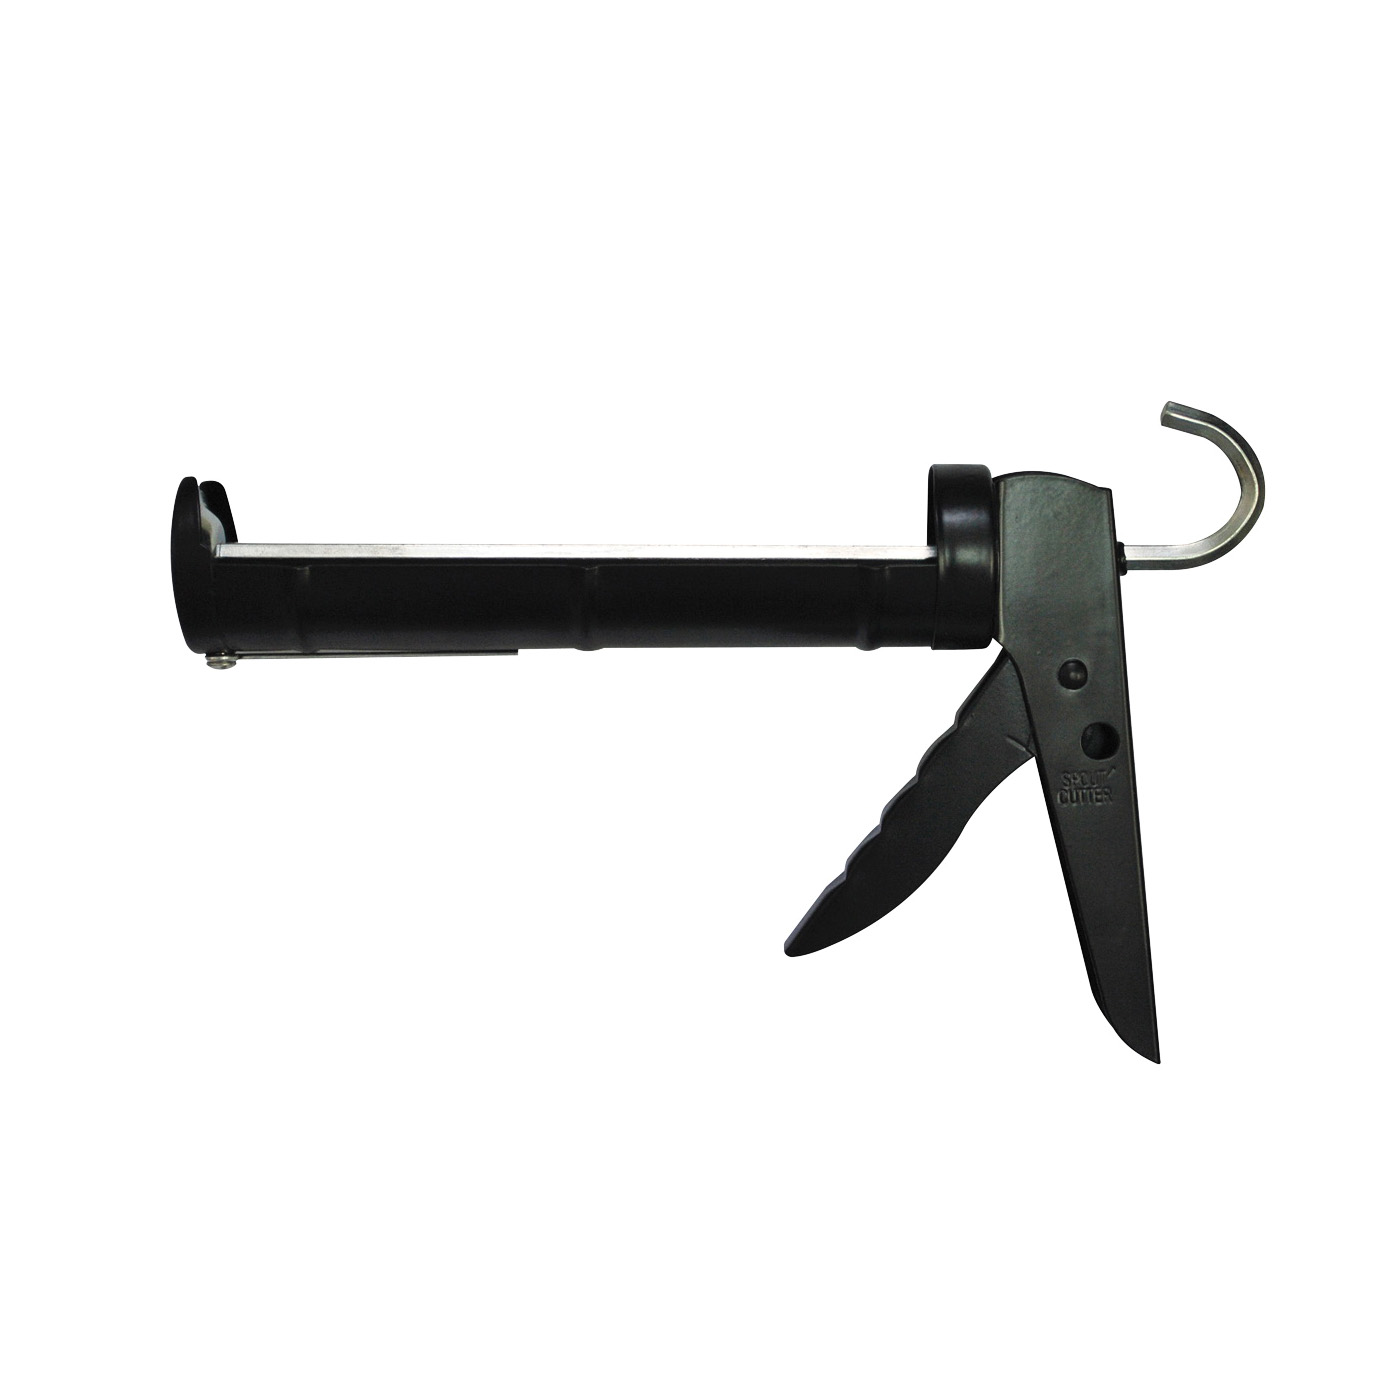 SJ0028-A Caulk Gun, Black